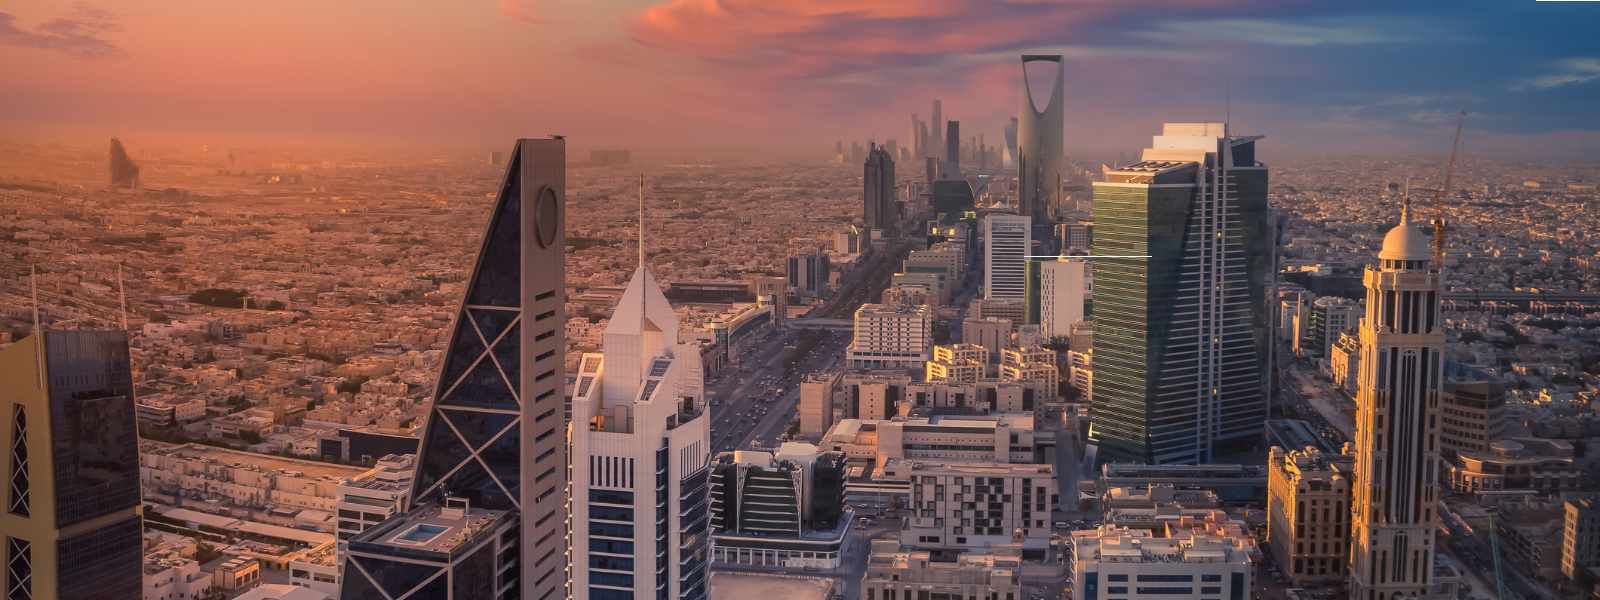 Riyadh city skyline at dusk